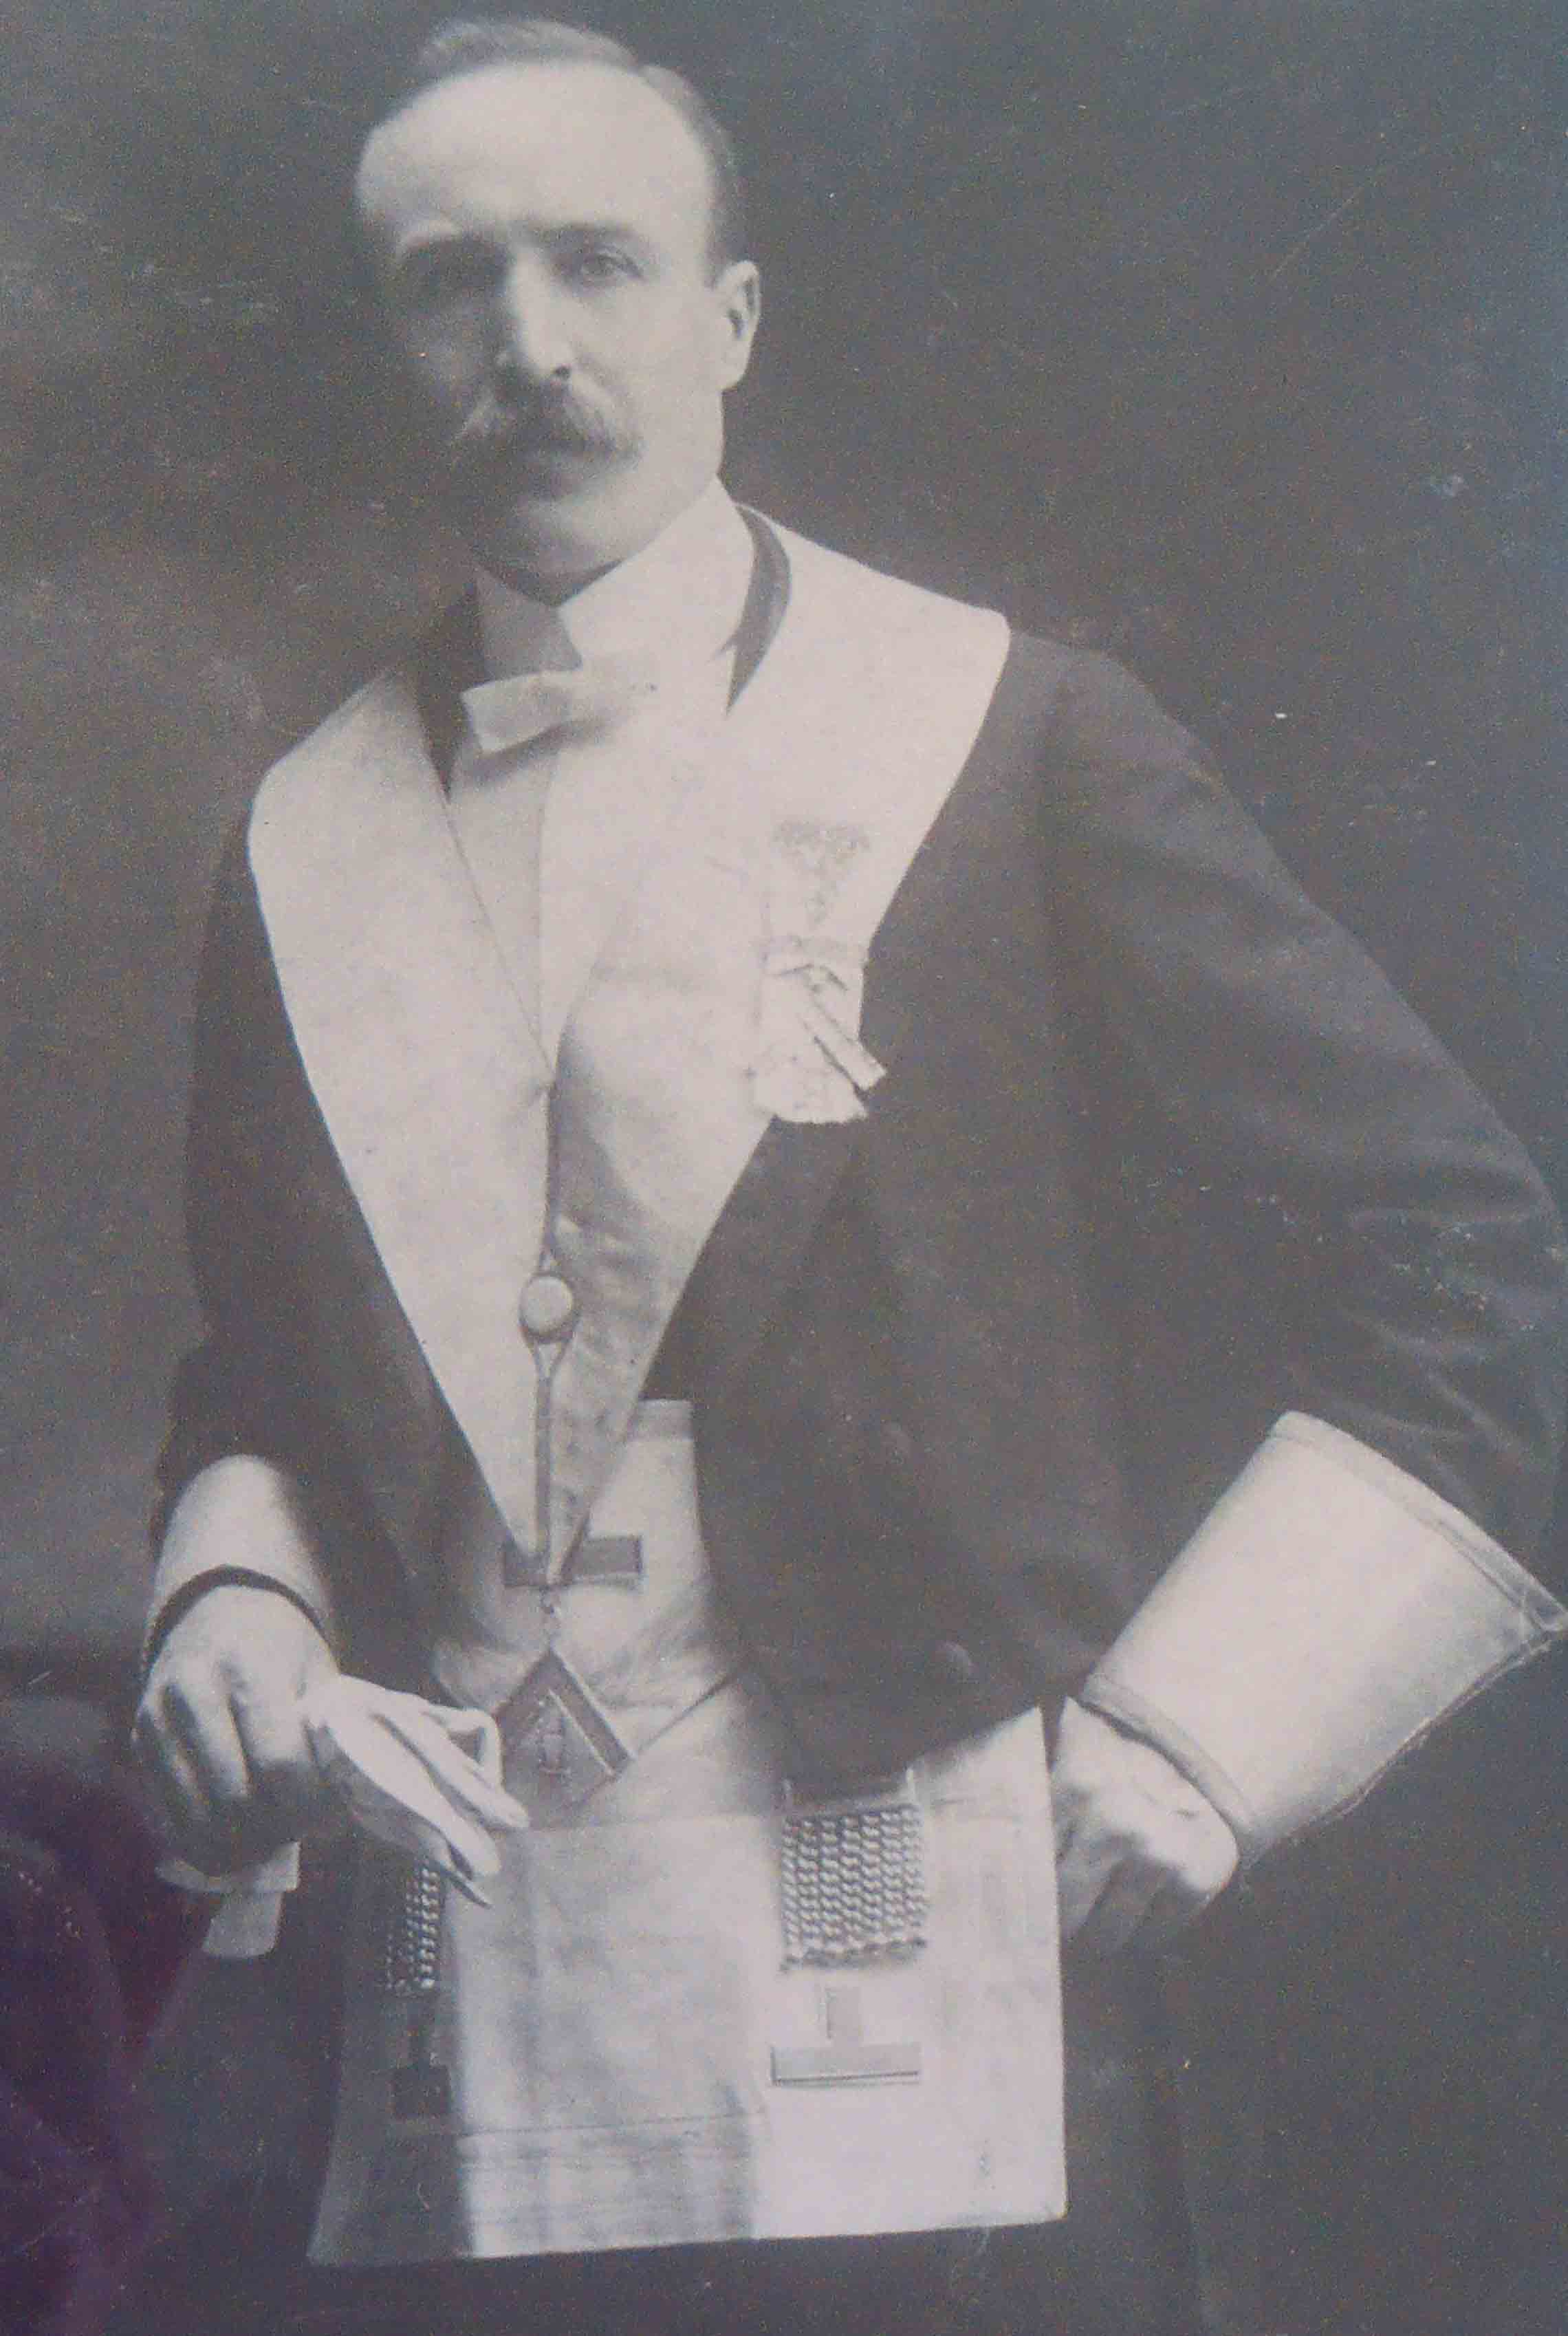 Edward John Hearn, circa 1907